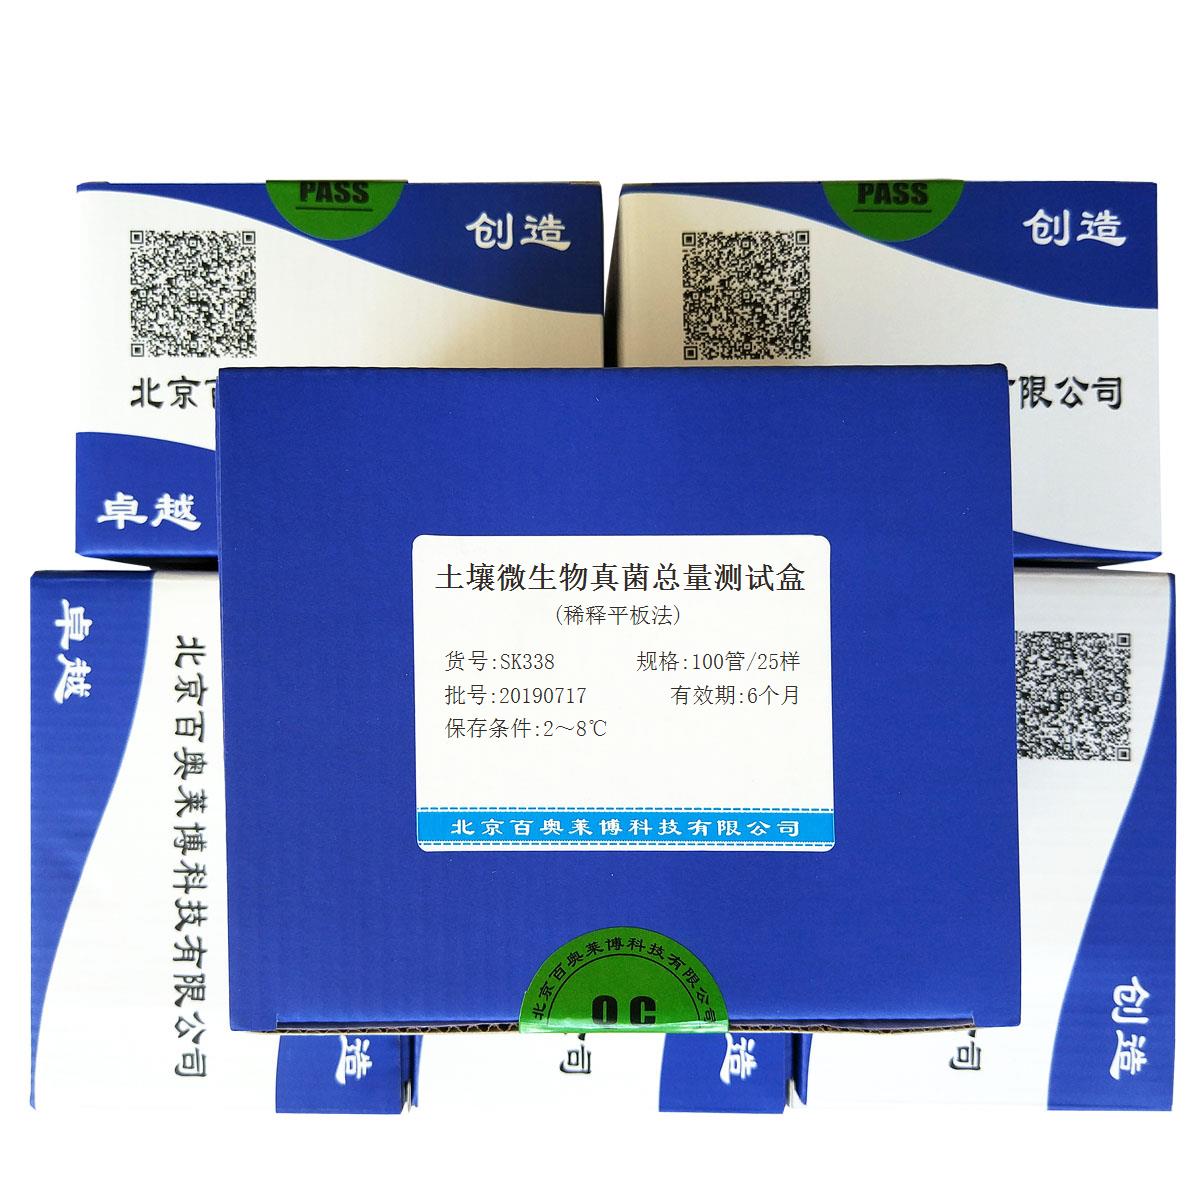 土壤微生物真菌总量测试盒(稀释平板法)北京品牌